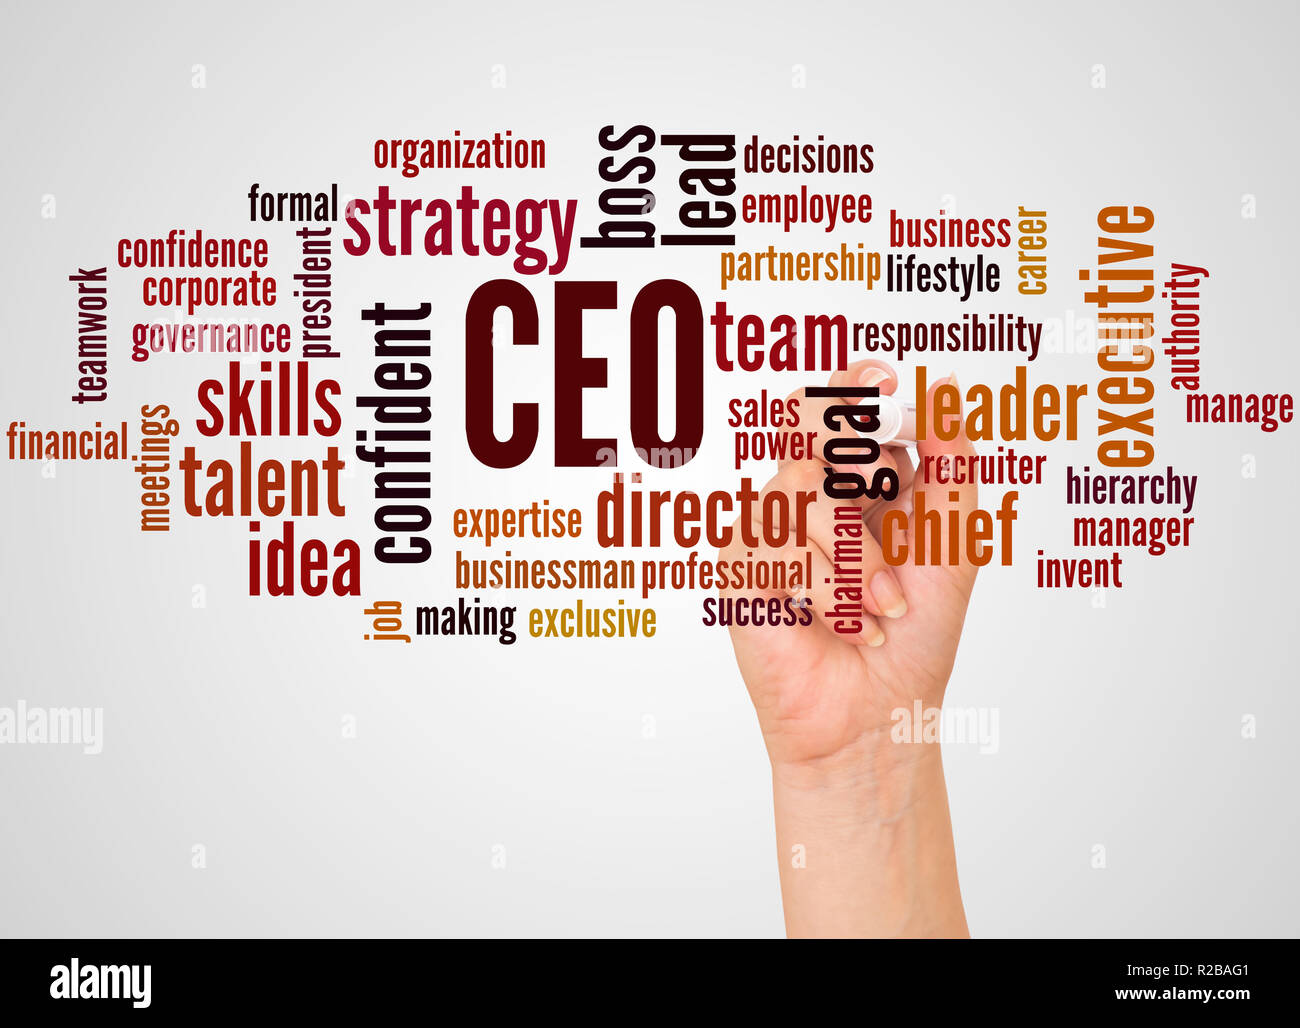 CEO - Chief Executive Officer, word cloud et part avec le concept sur fond blanc. Banque D'Images